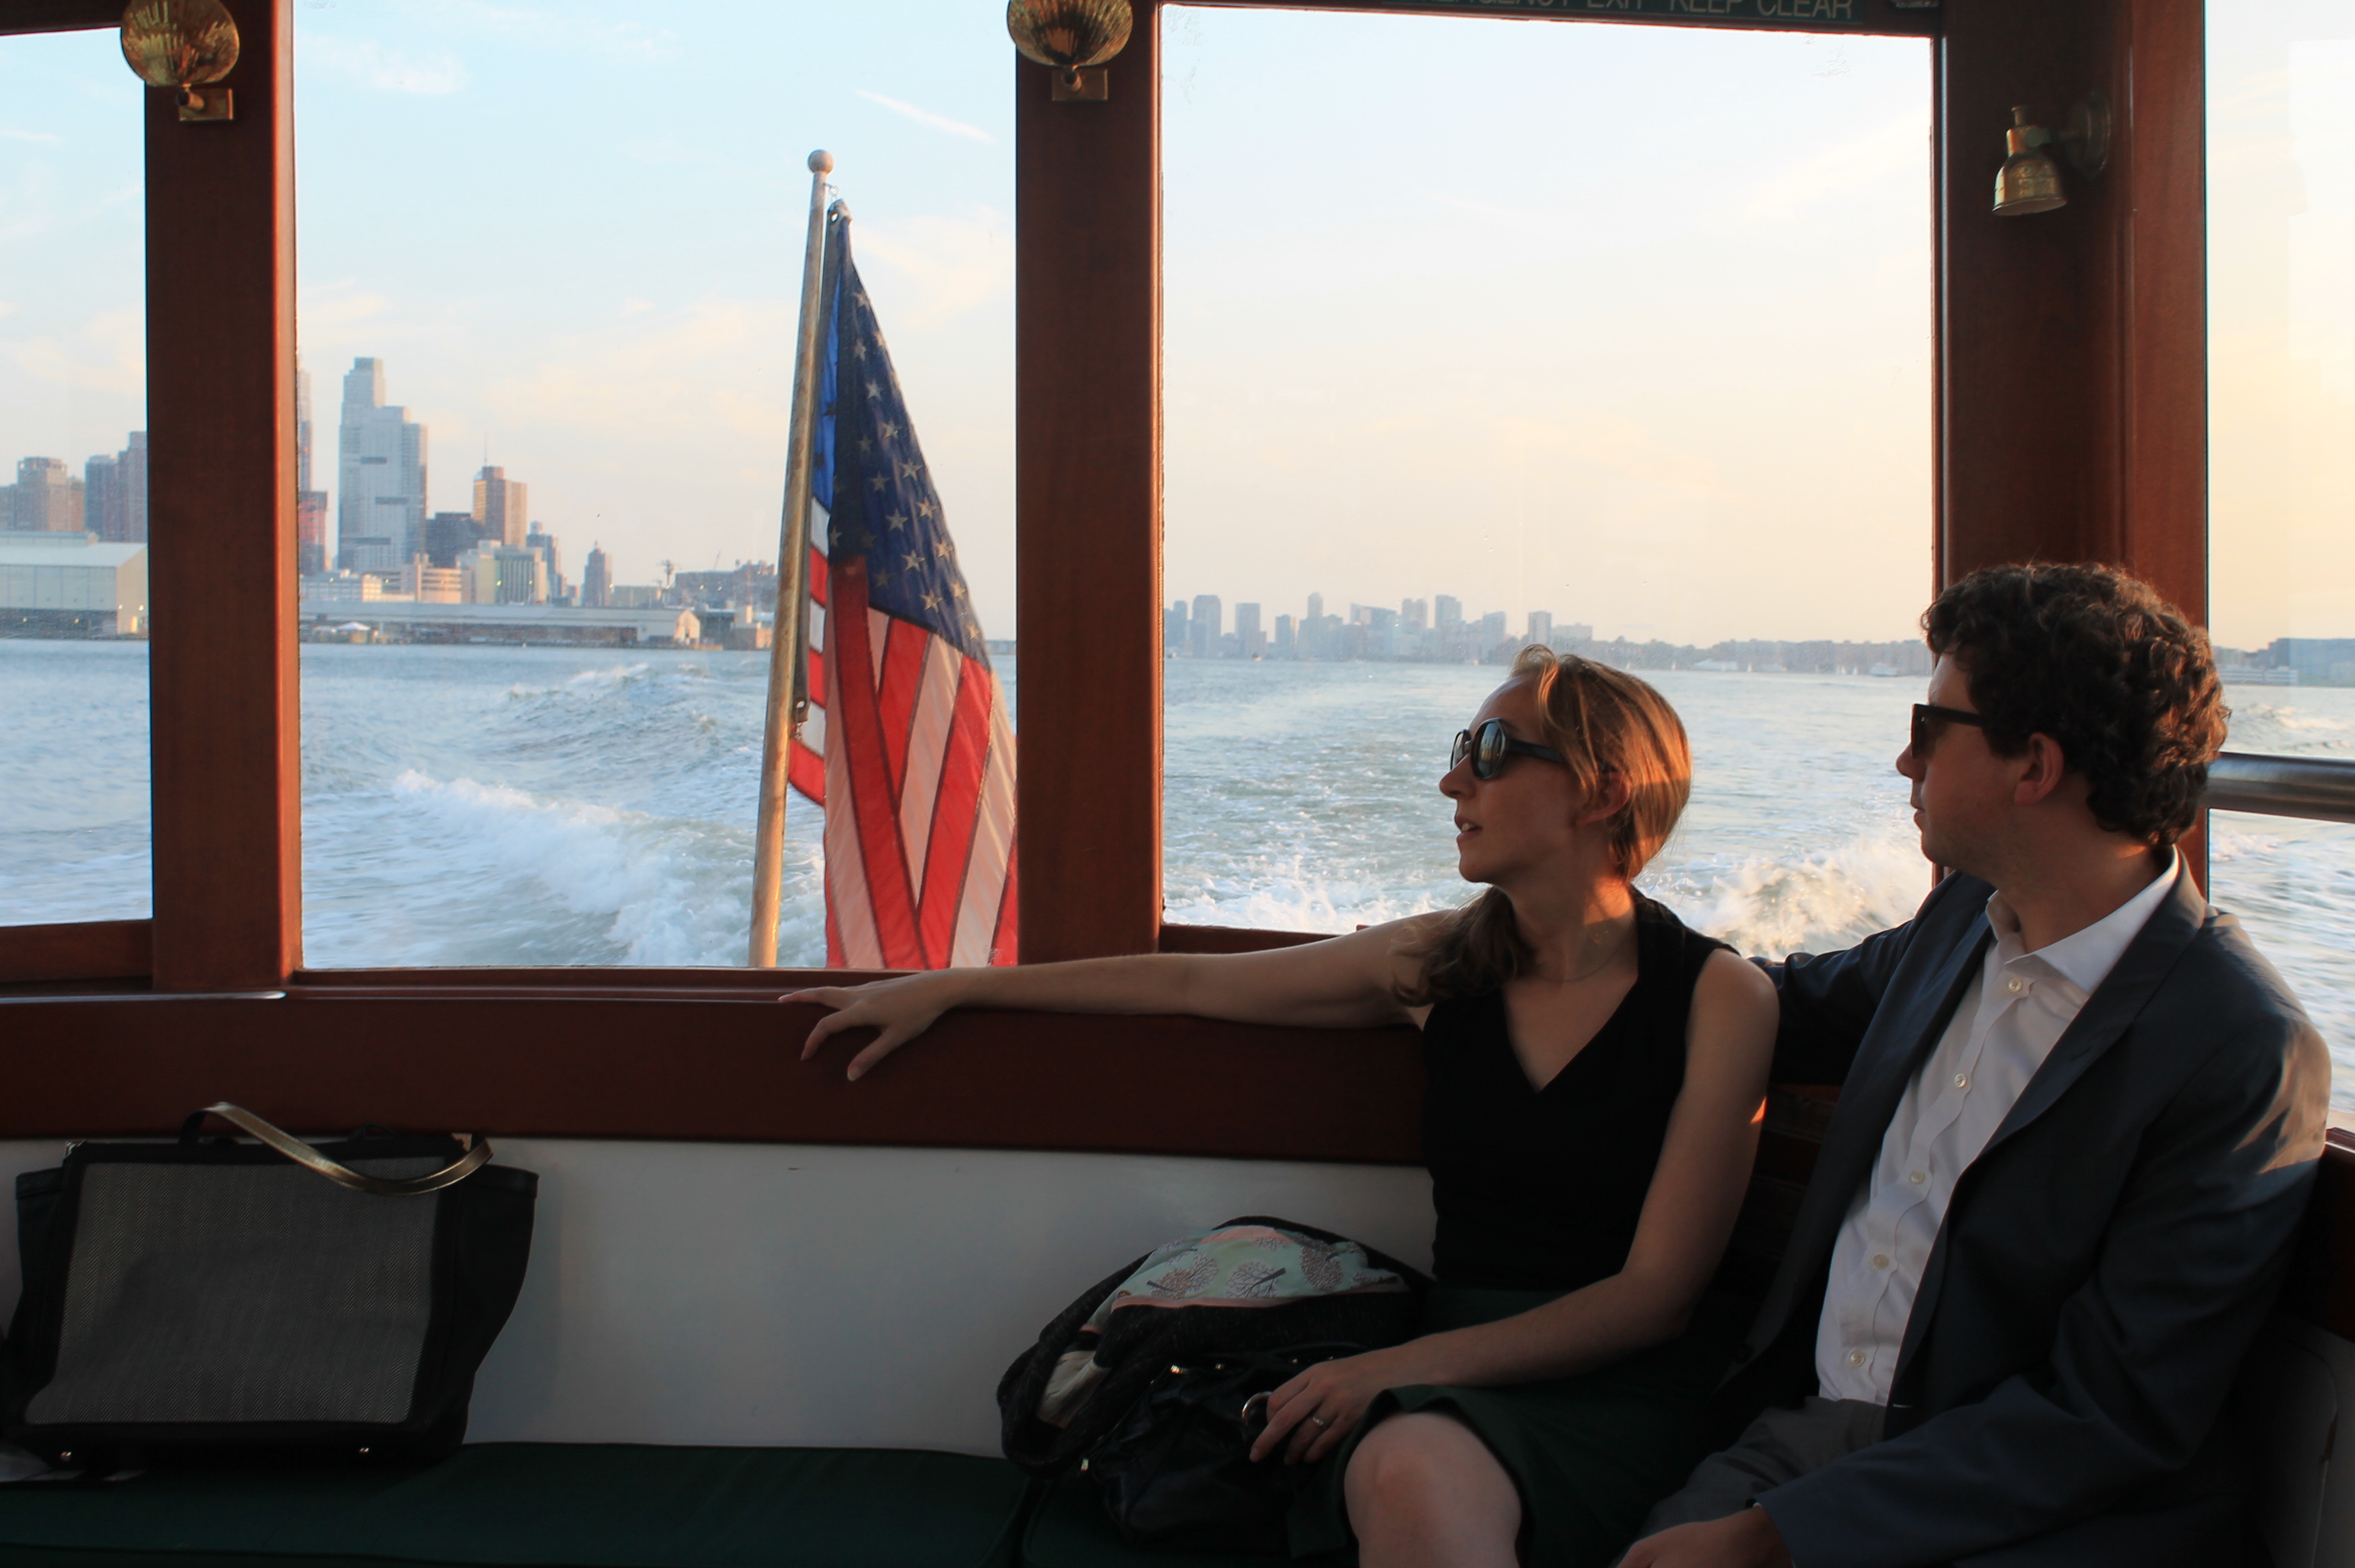 CFAF Young Patrons Set Sail for a Fun Evening Tour of New York Harbor